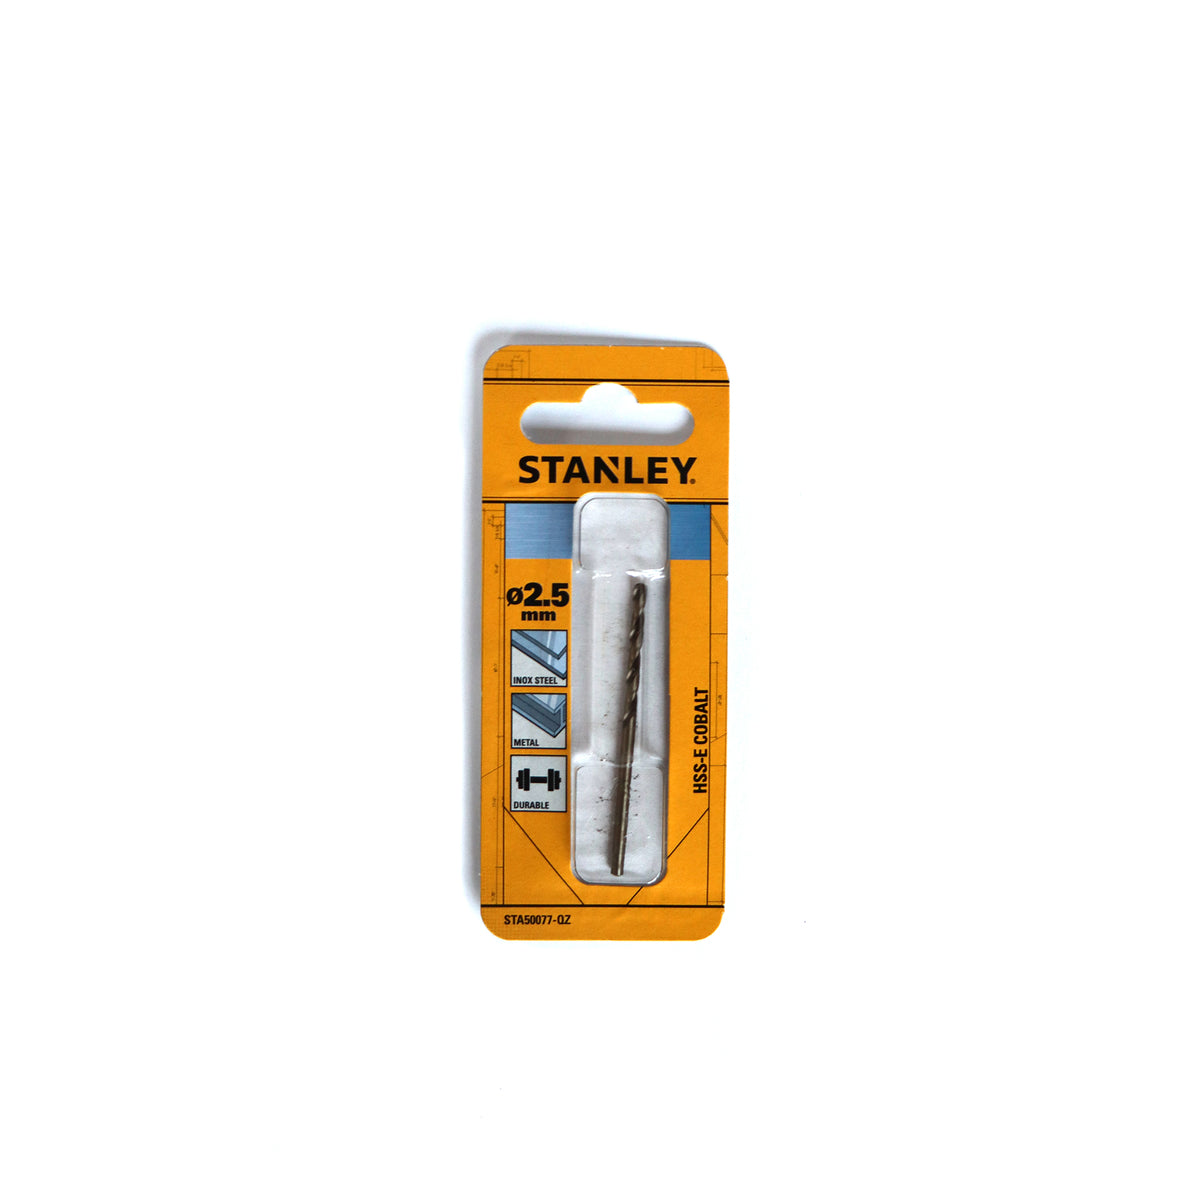 Stanley metaalboor STA50077-QZ HSS-E kobalt 2,5mm